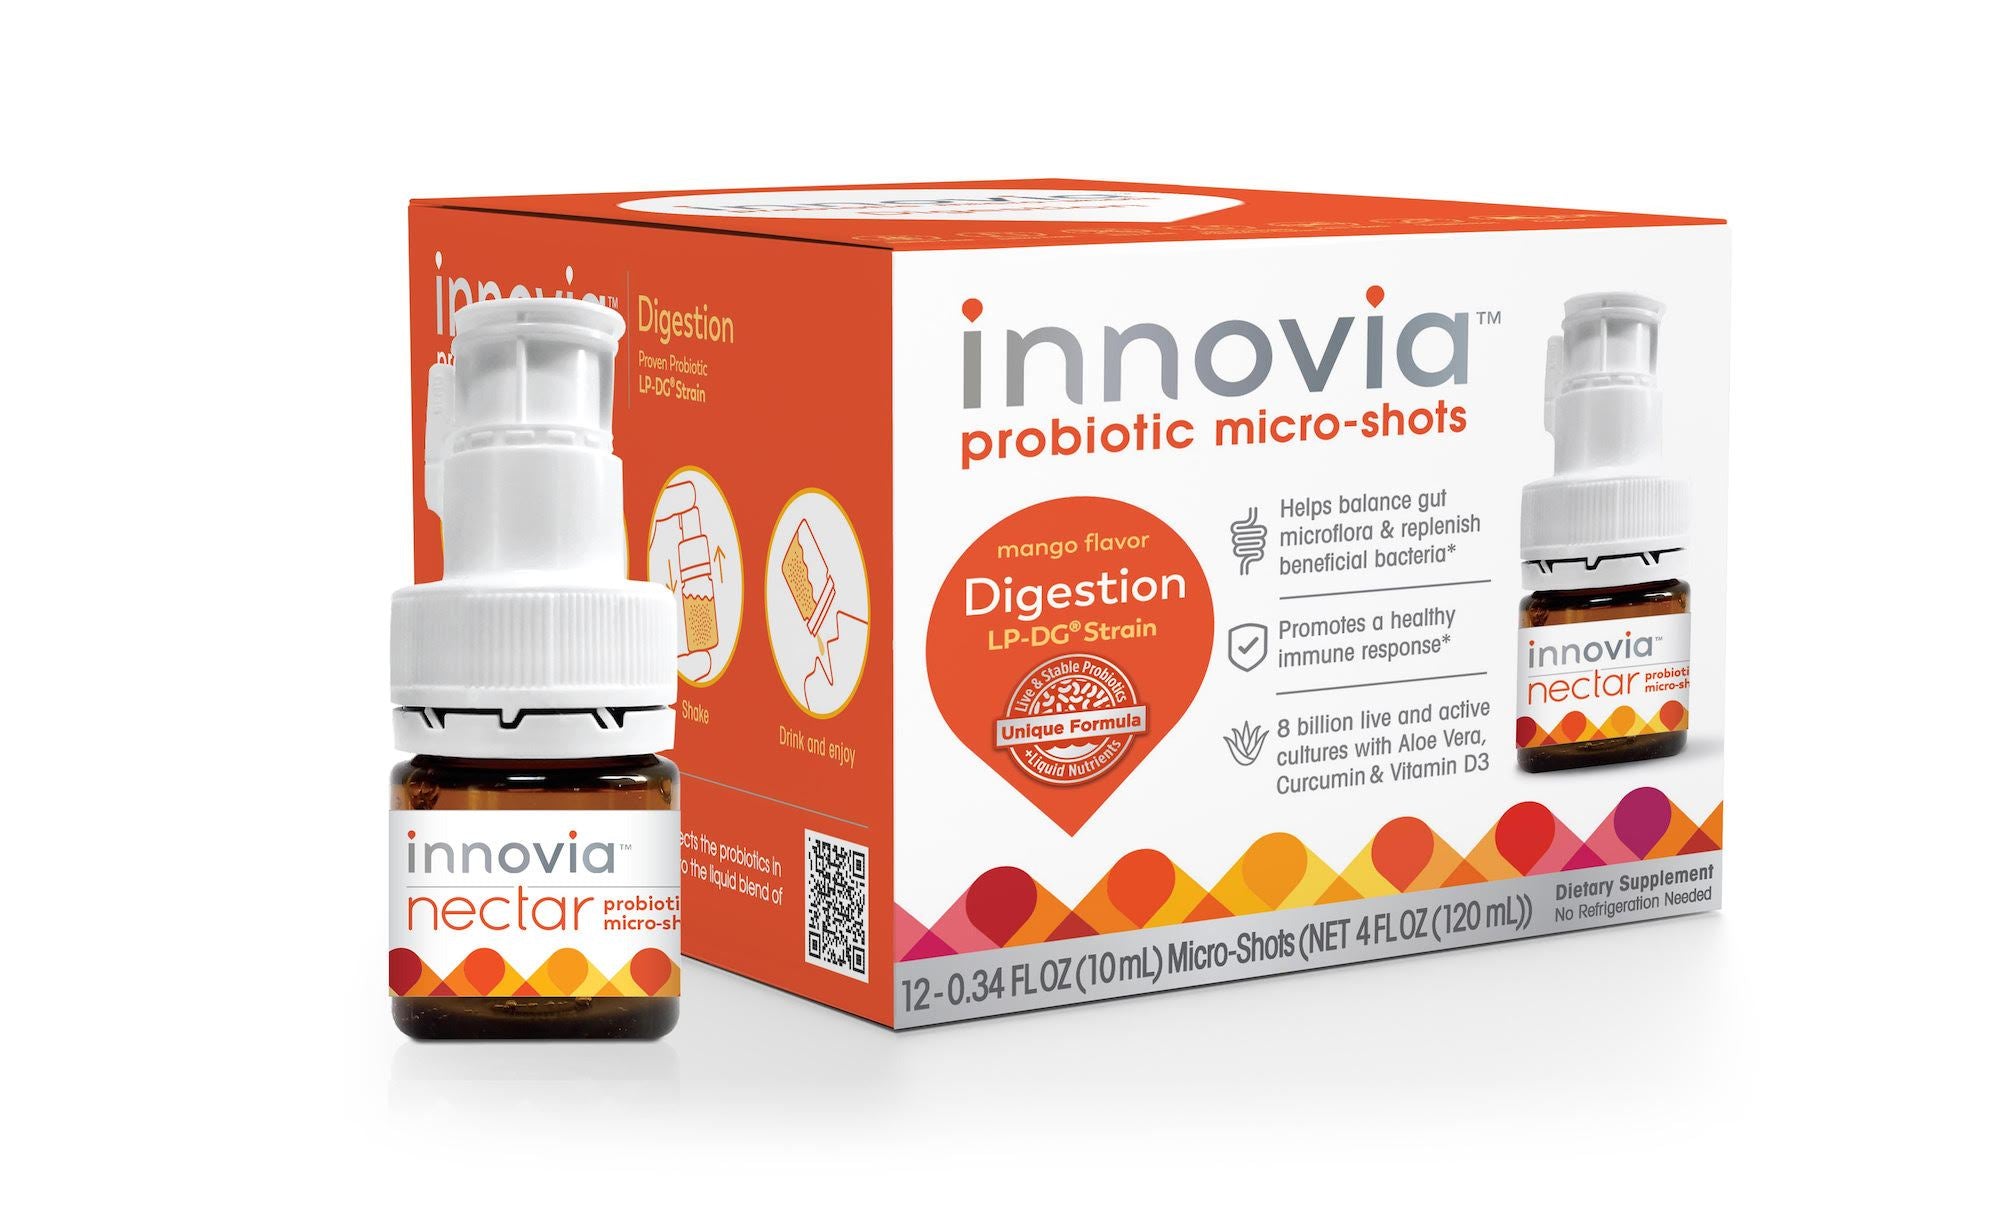 Digestion LP-DG® Strain Probiotic micro-shots